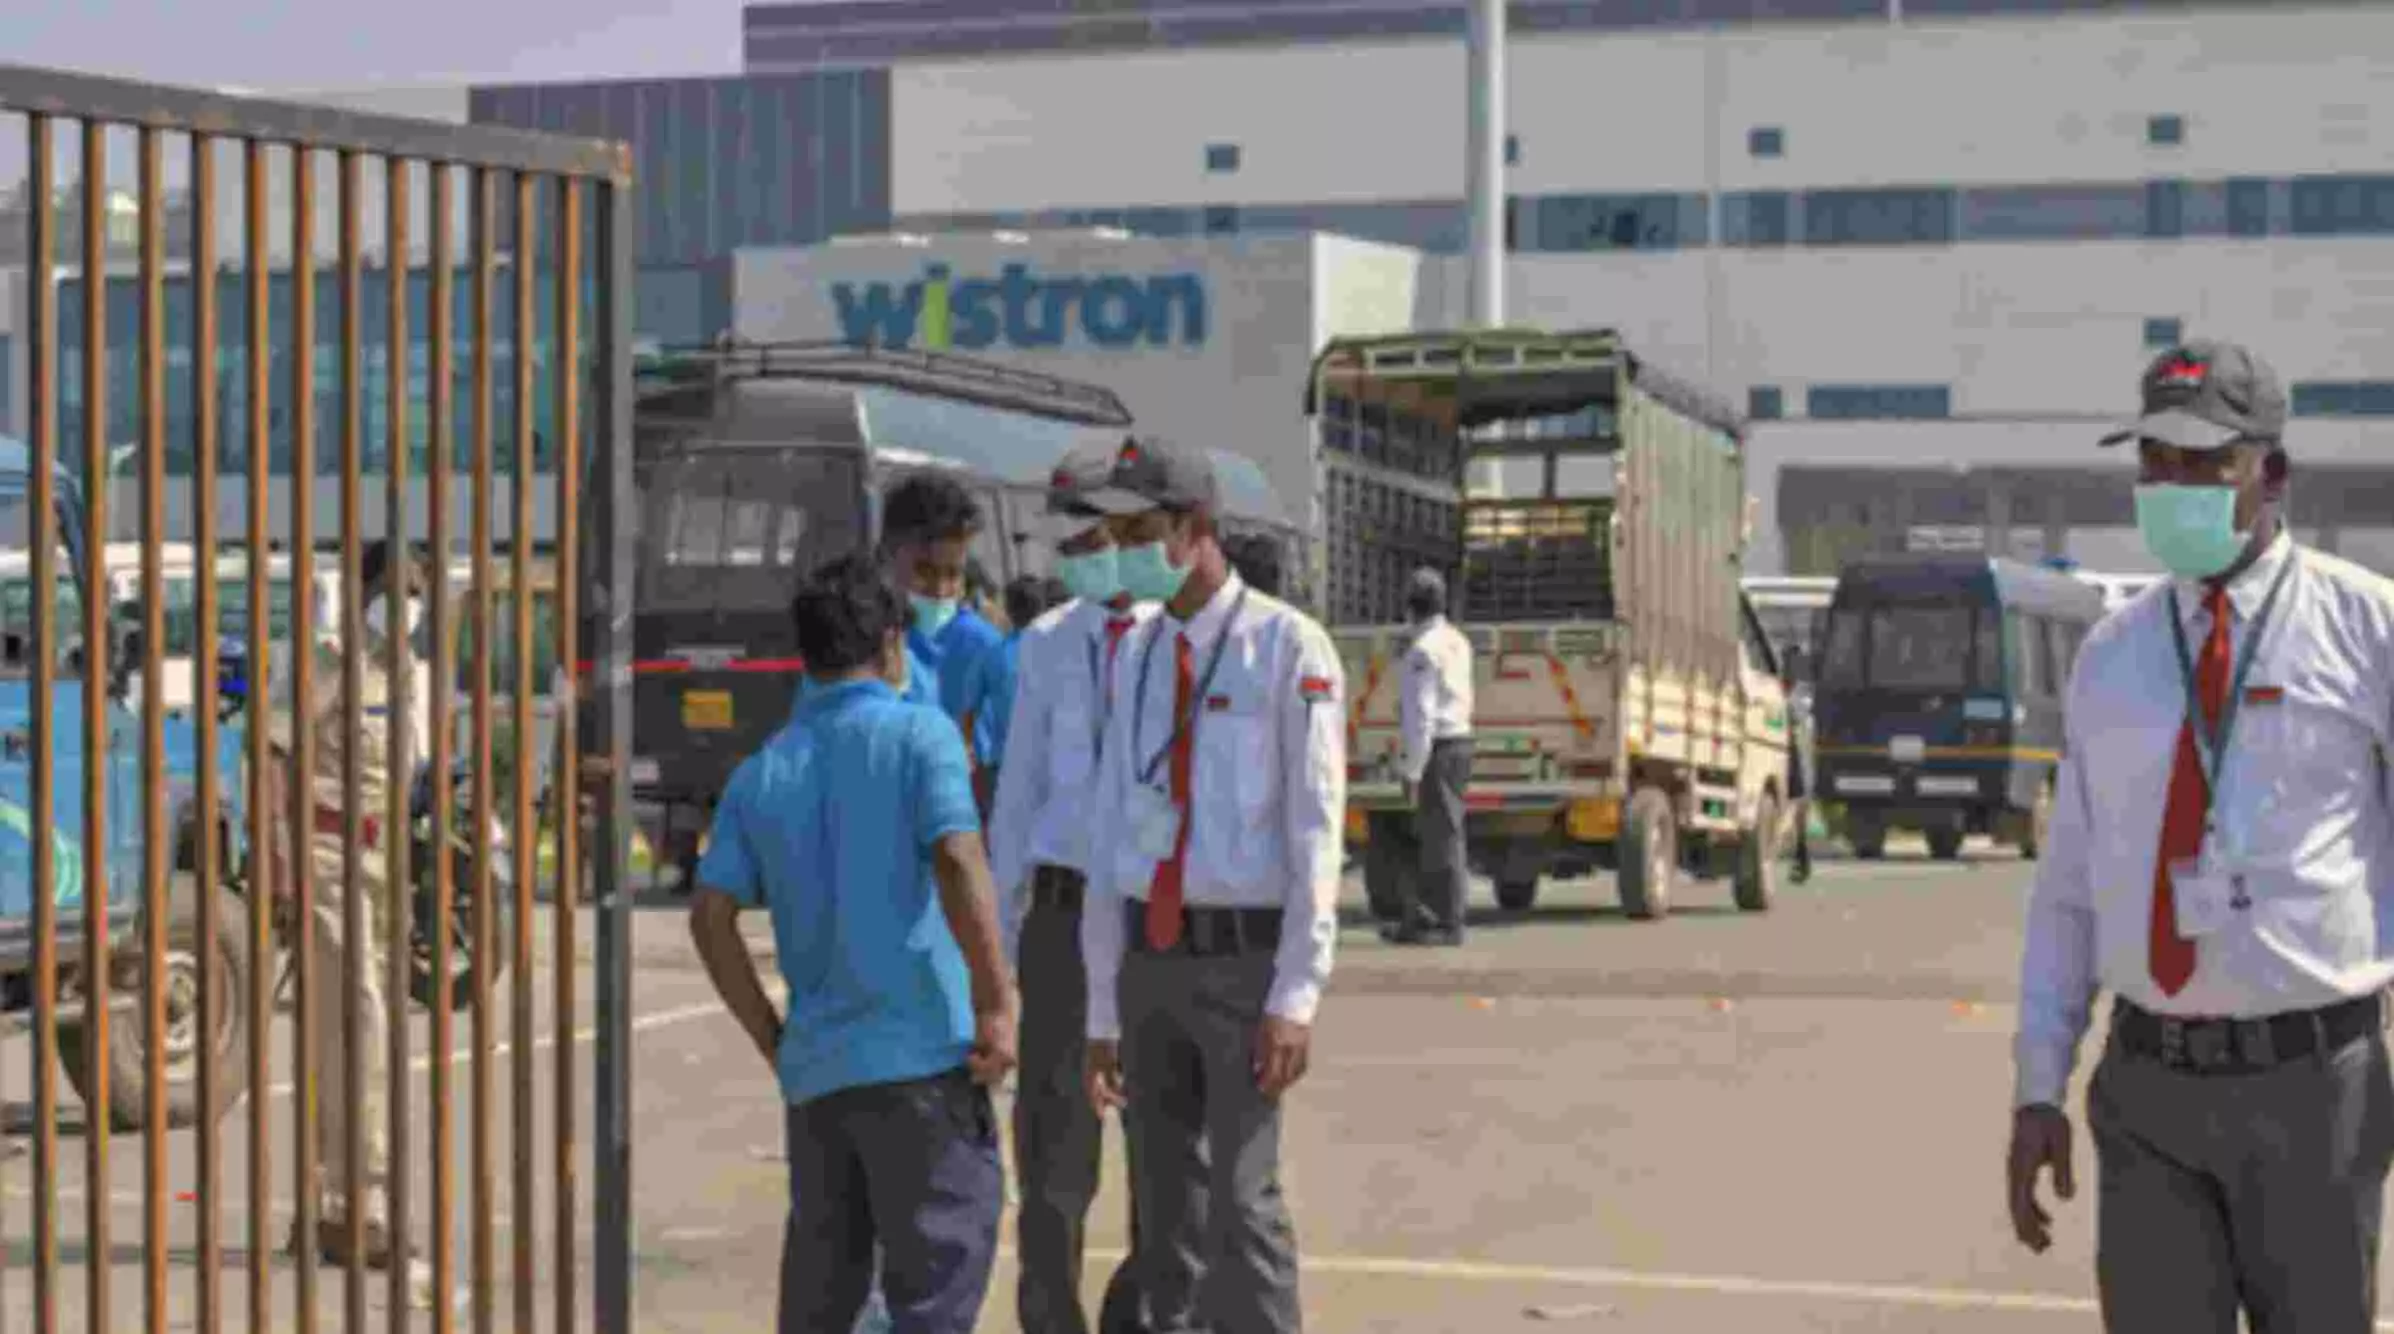 Wistron iPhone factory violence : हिंसा के बाद Apple सप्लायर विस्ट्रॉन प्रोबेशन पर, इंडिया हेड को निकाला